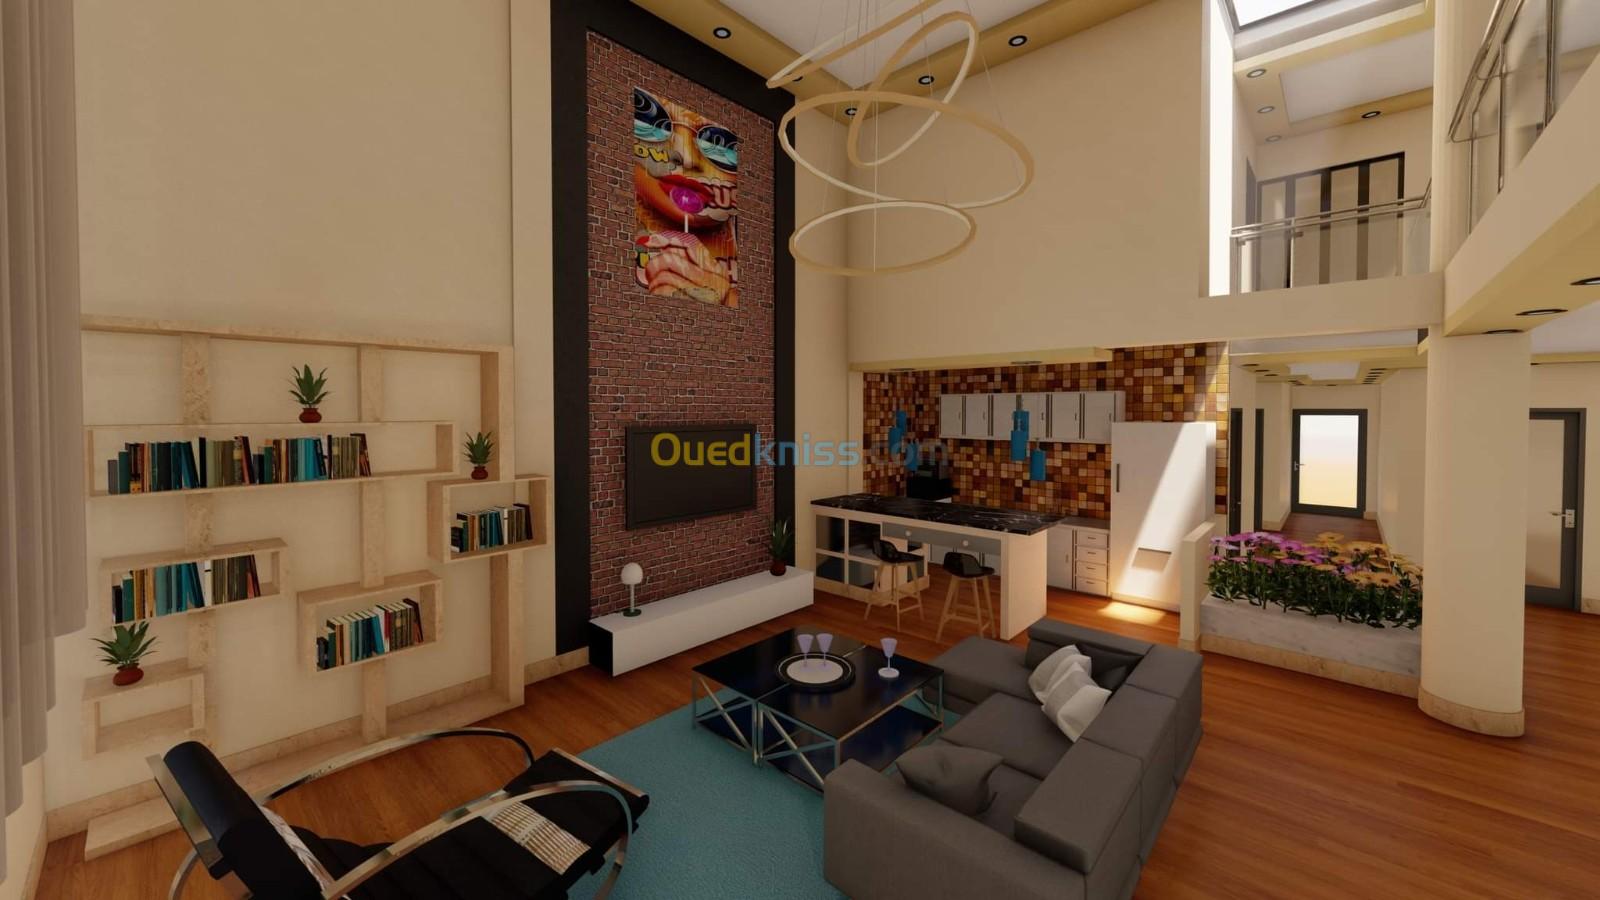 Sous traitance modélisations 2D/3D promotion immobilière villas aménagement intérieur extérieur 